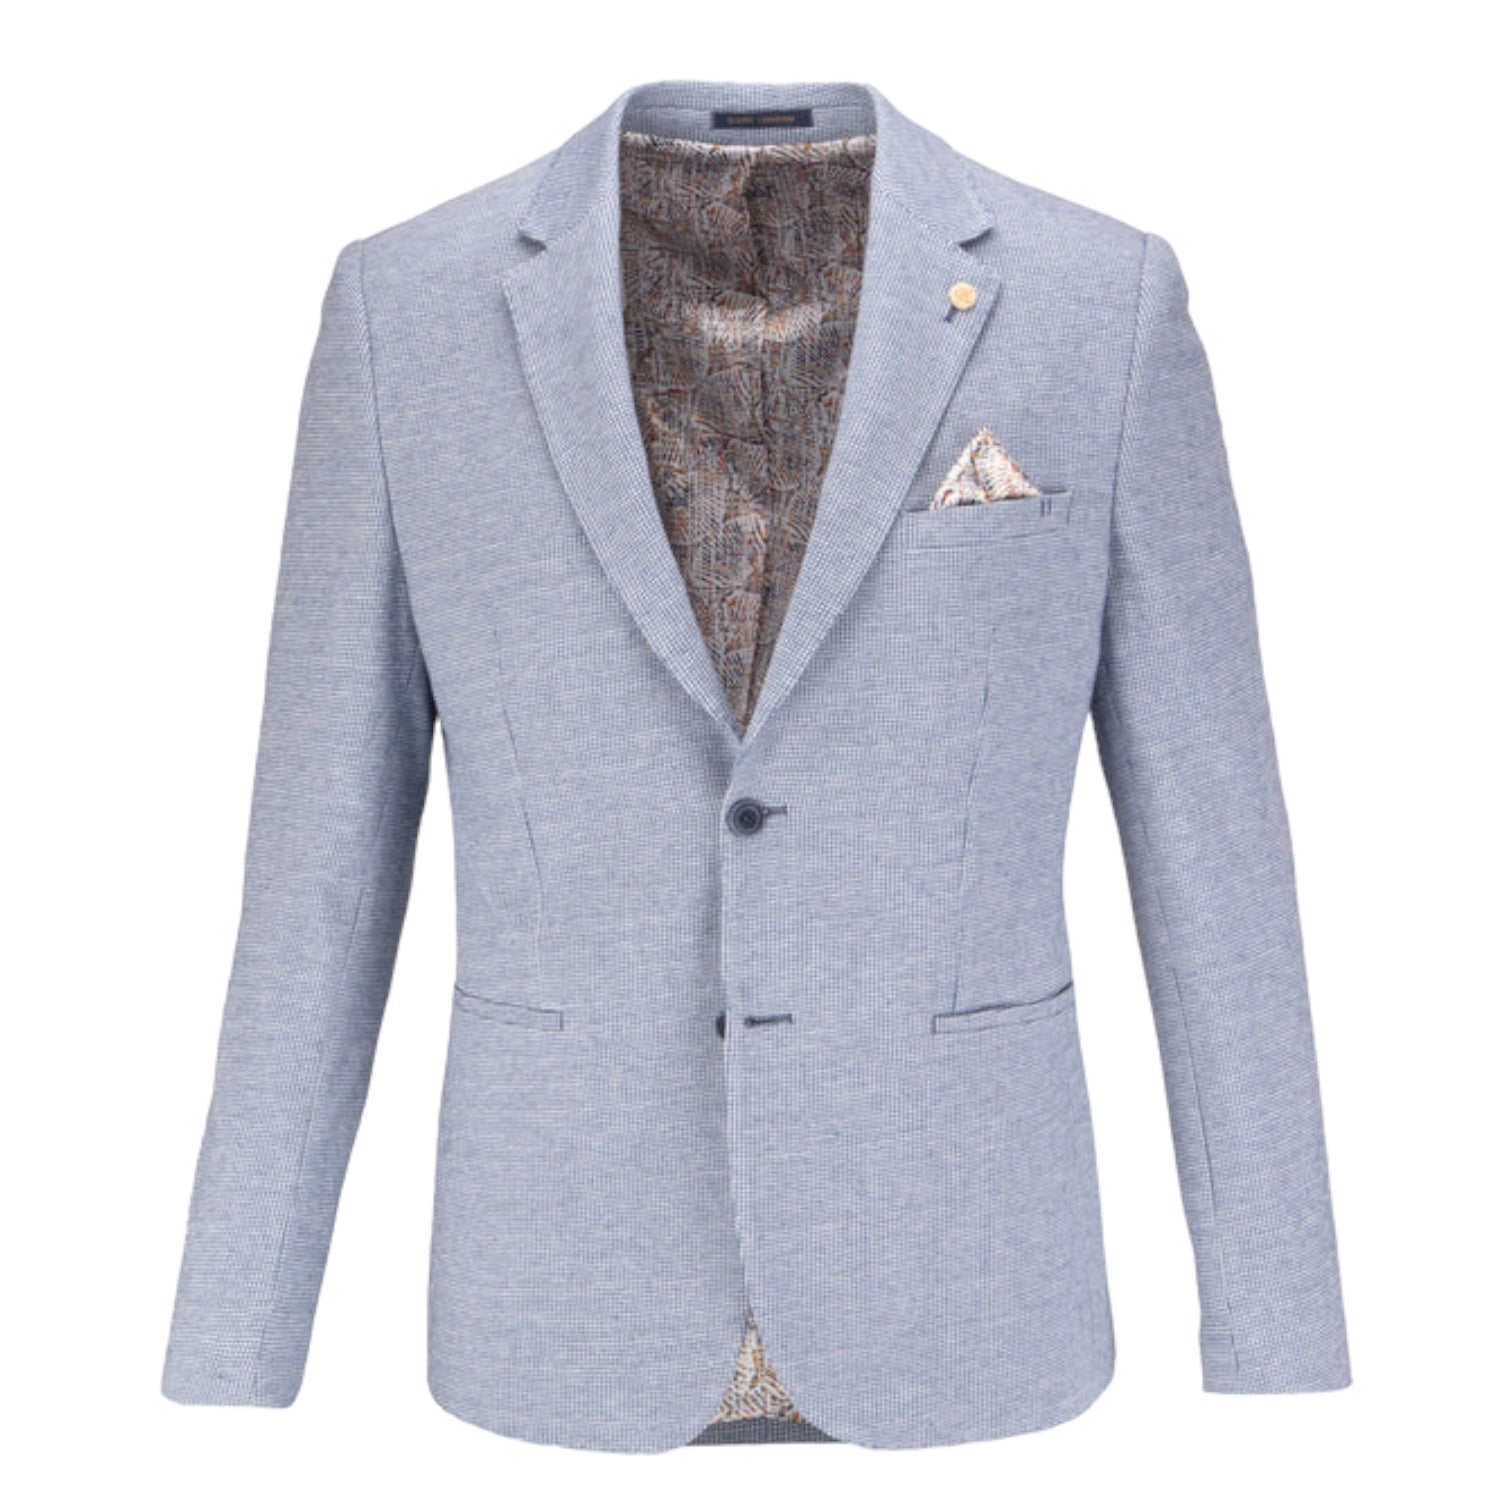 Guide London JK3534 Blue Cotton & Linen Blend Jersey Blazer